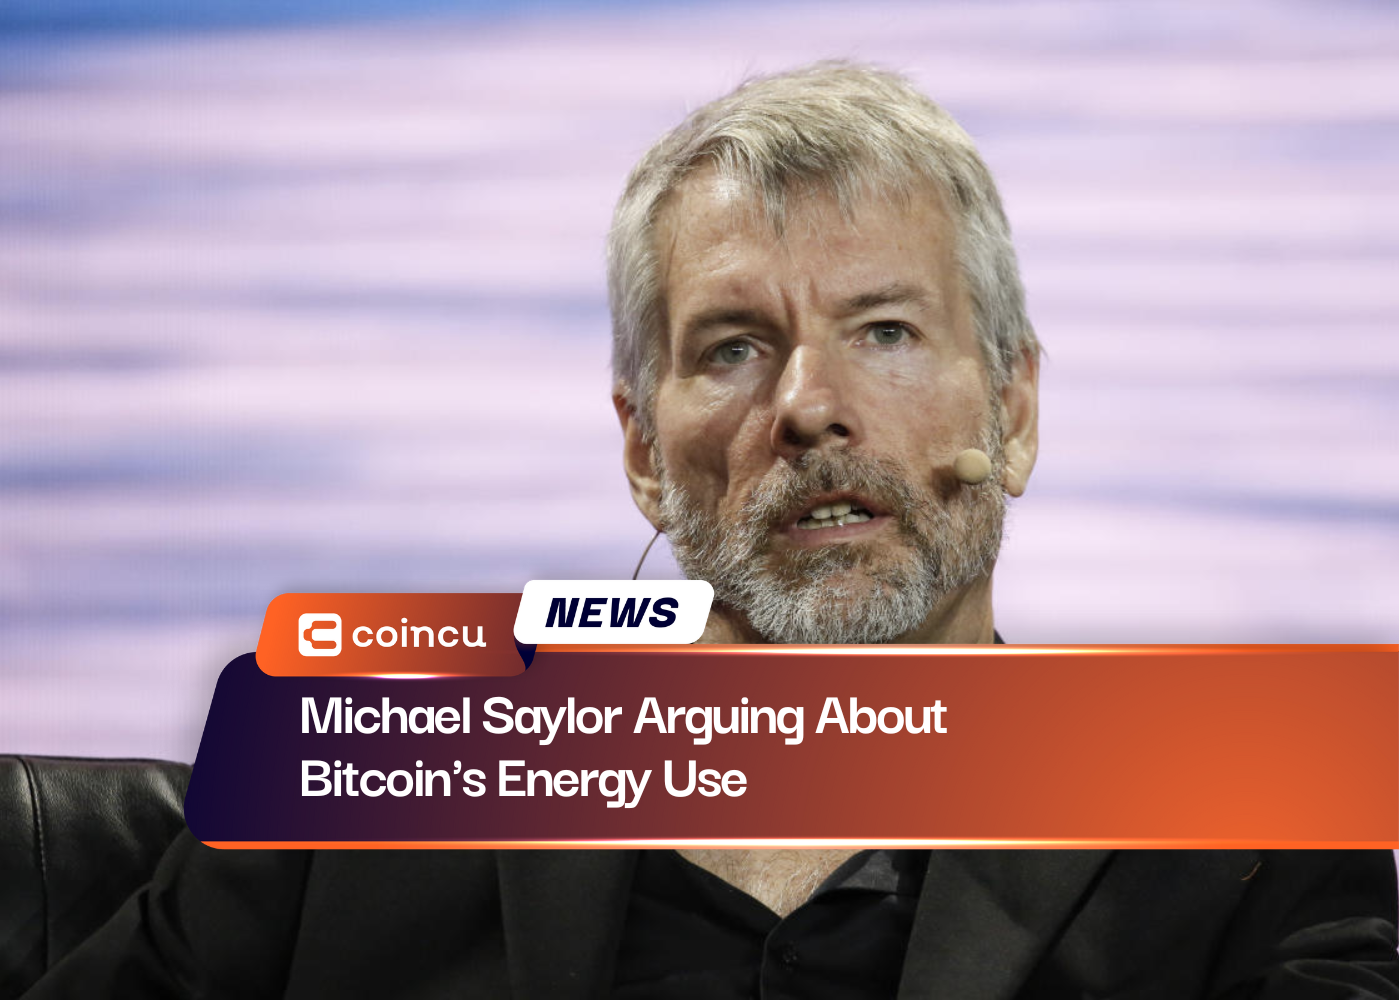 Michael Saylor argumentiert über den Energieverbrauch von Bitcoin